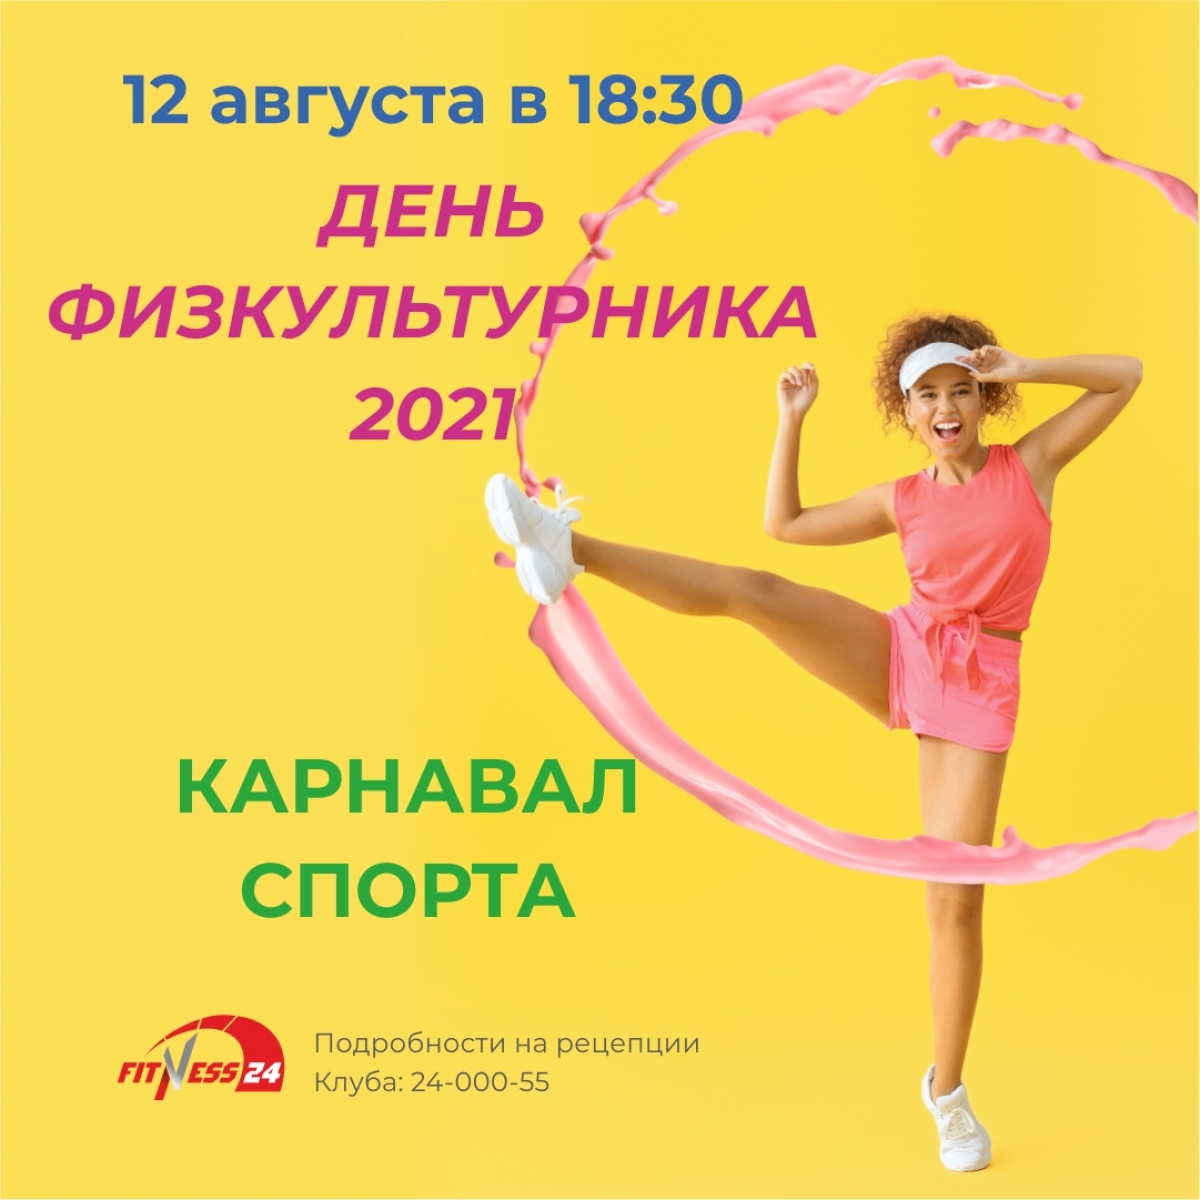 День физкультурника 2021: «Карнавал спорта» в Fitness24 Ветеранов!